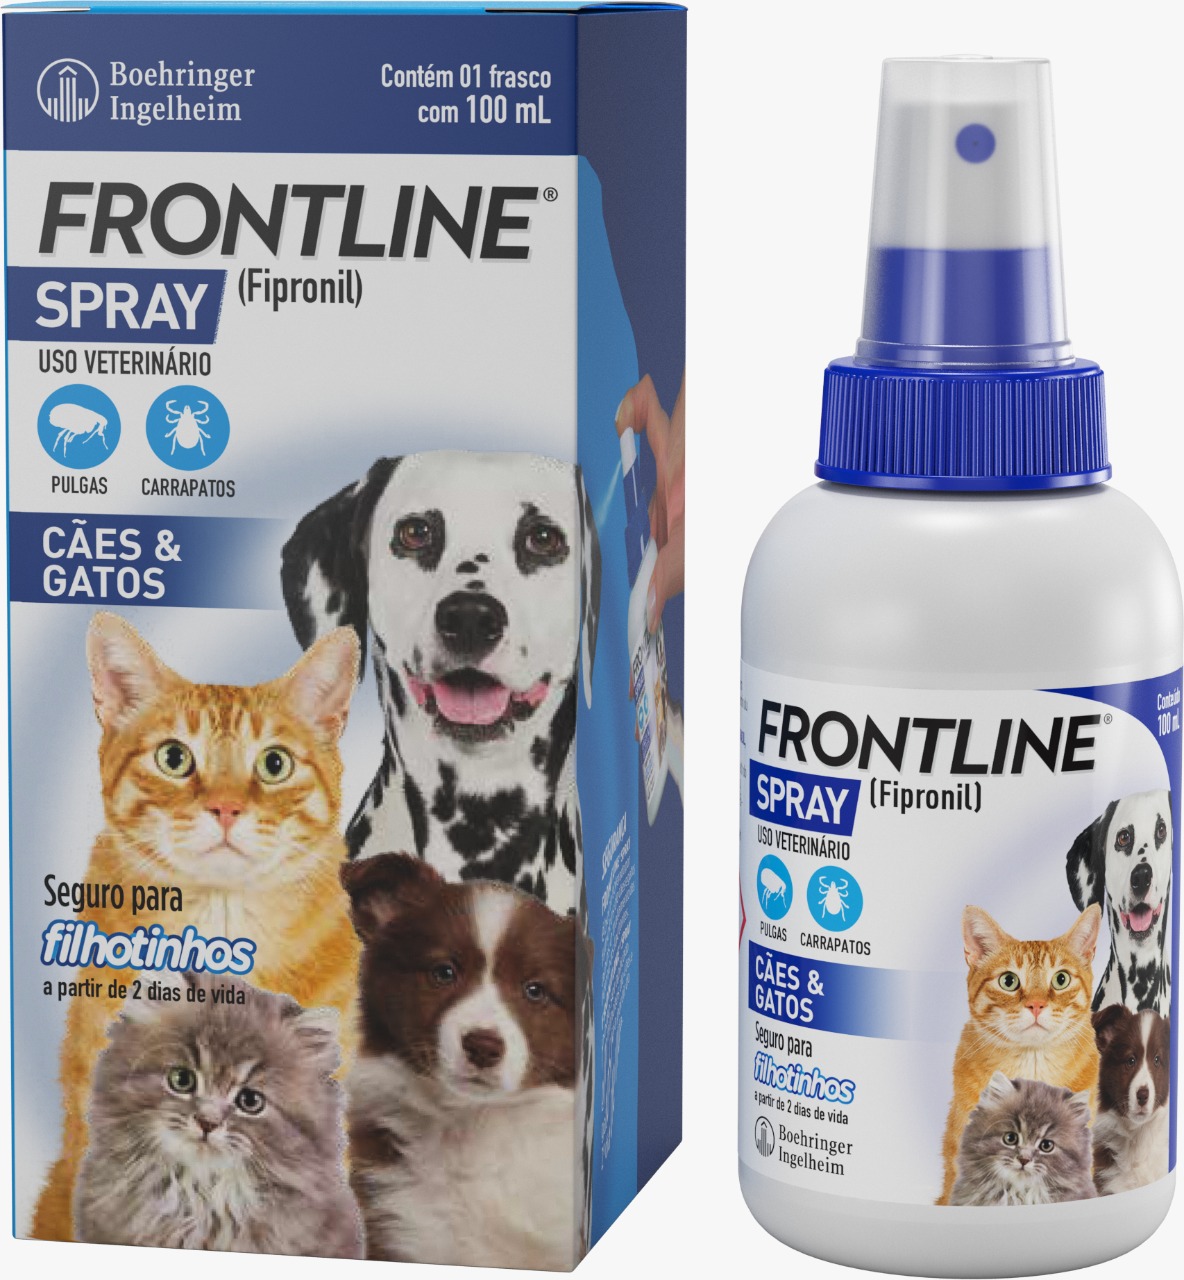 Frontline Spray (Fipronil) – Caminade Petshop